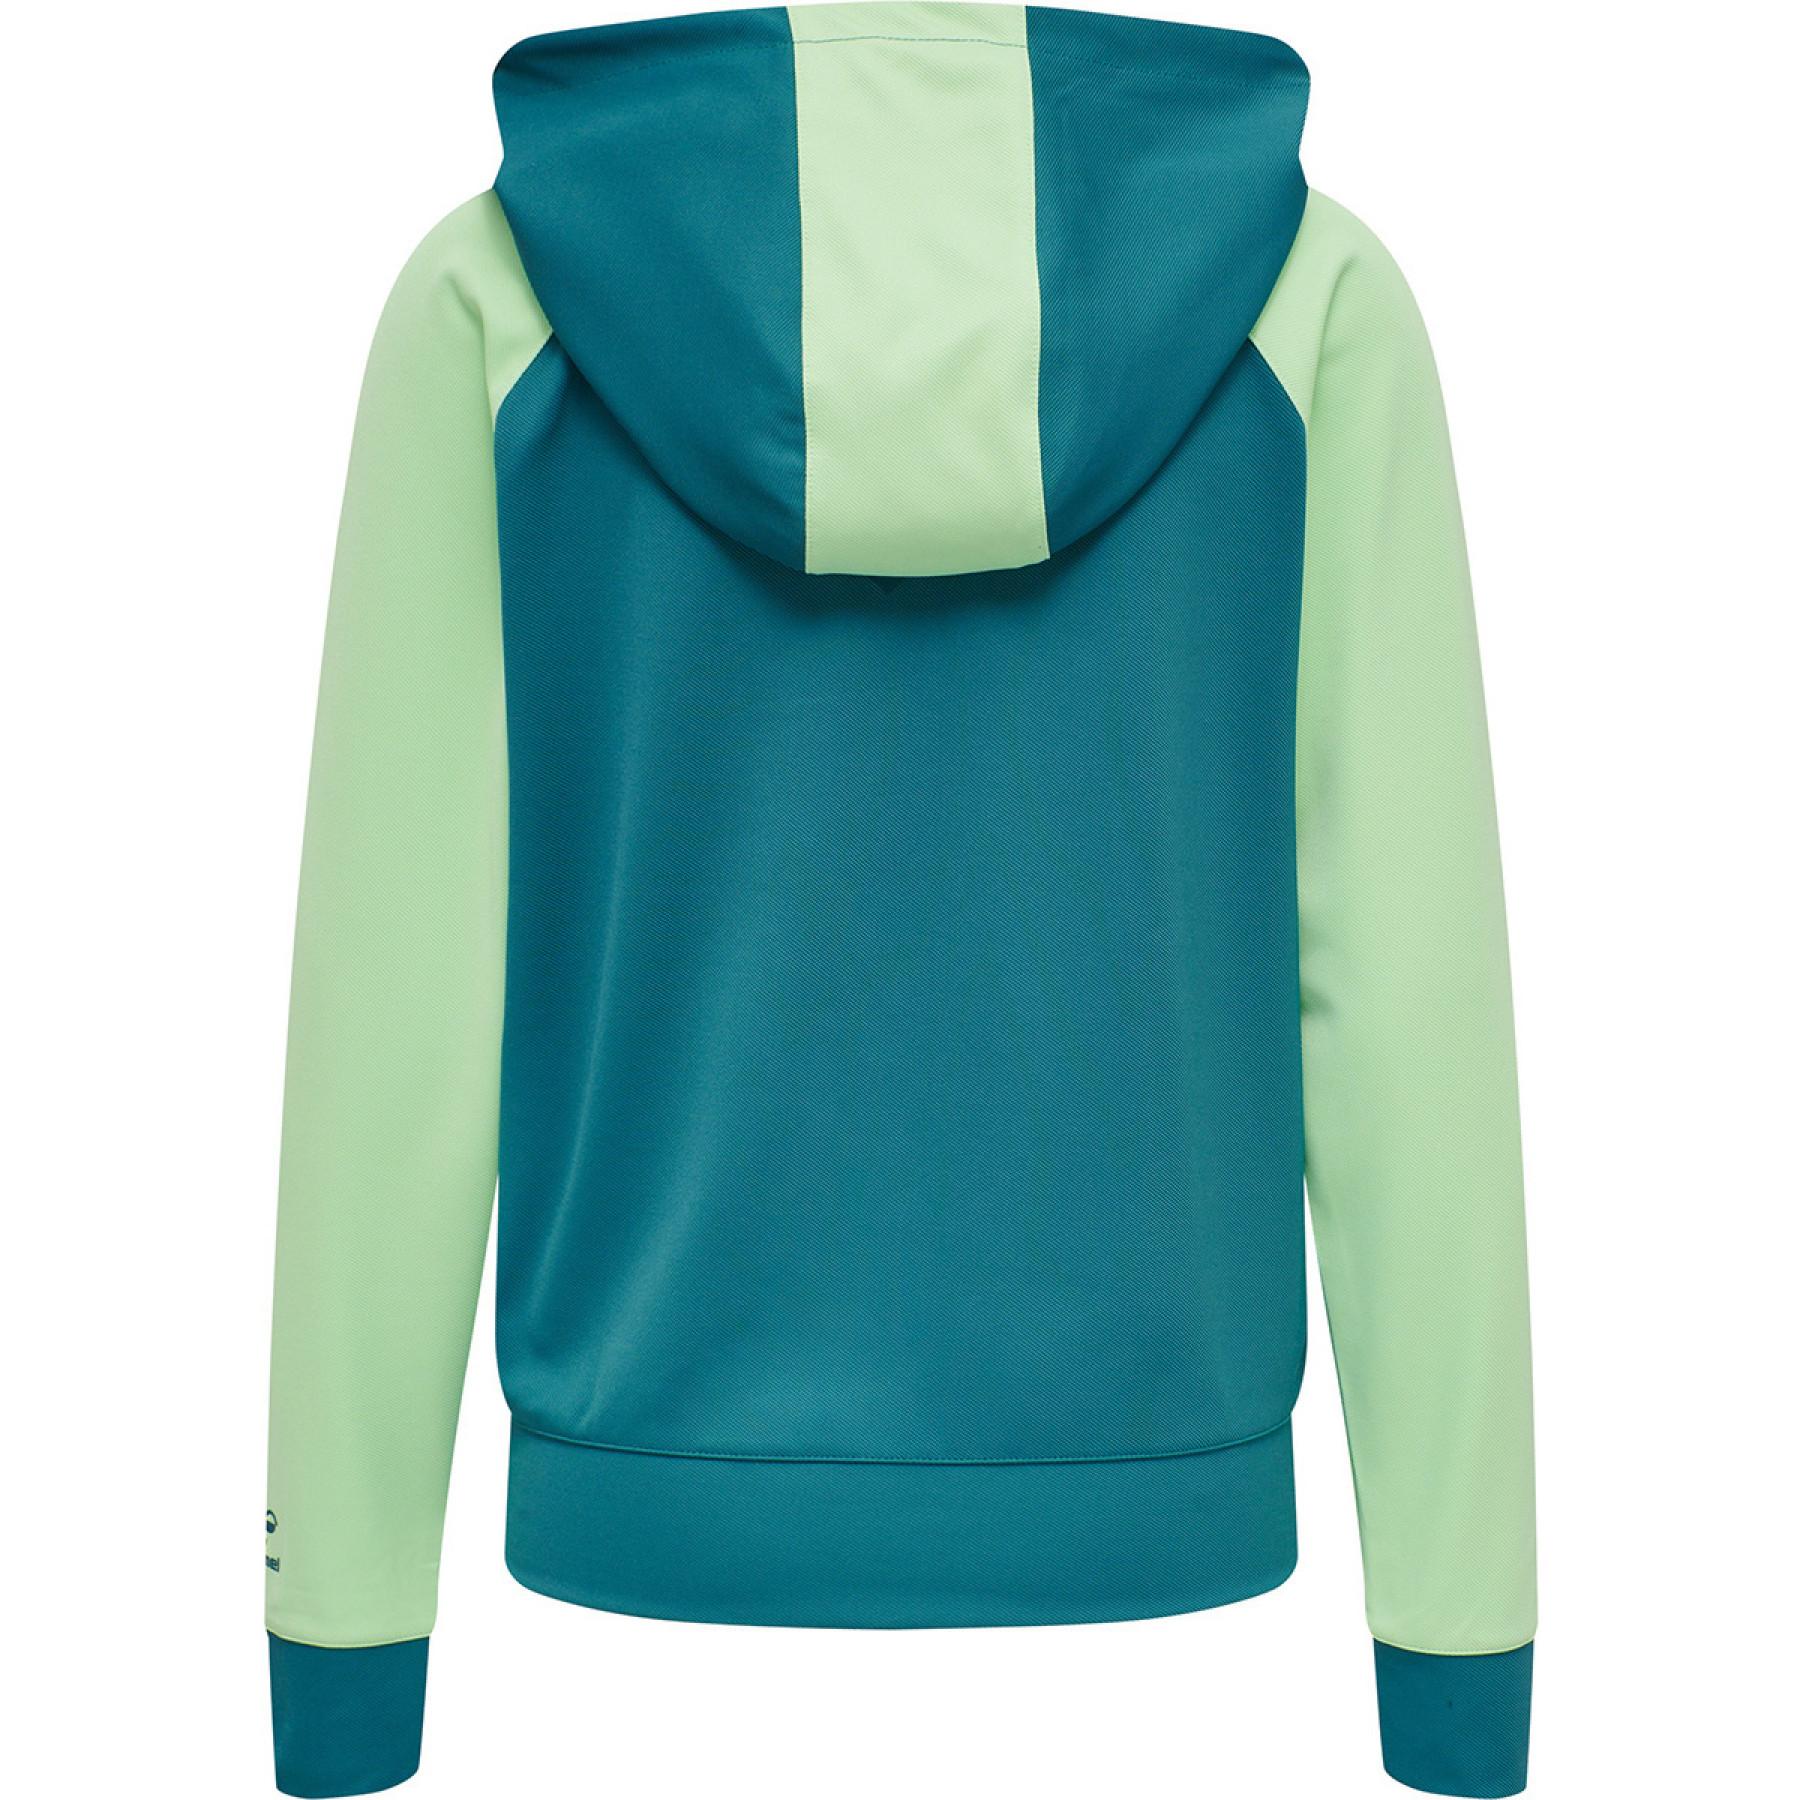 Women's hooded sweatshirt Hummel hmlaction zip